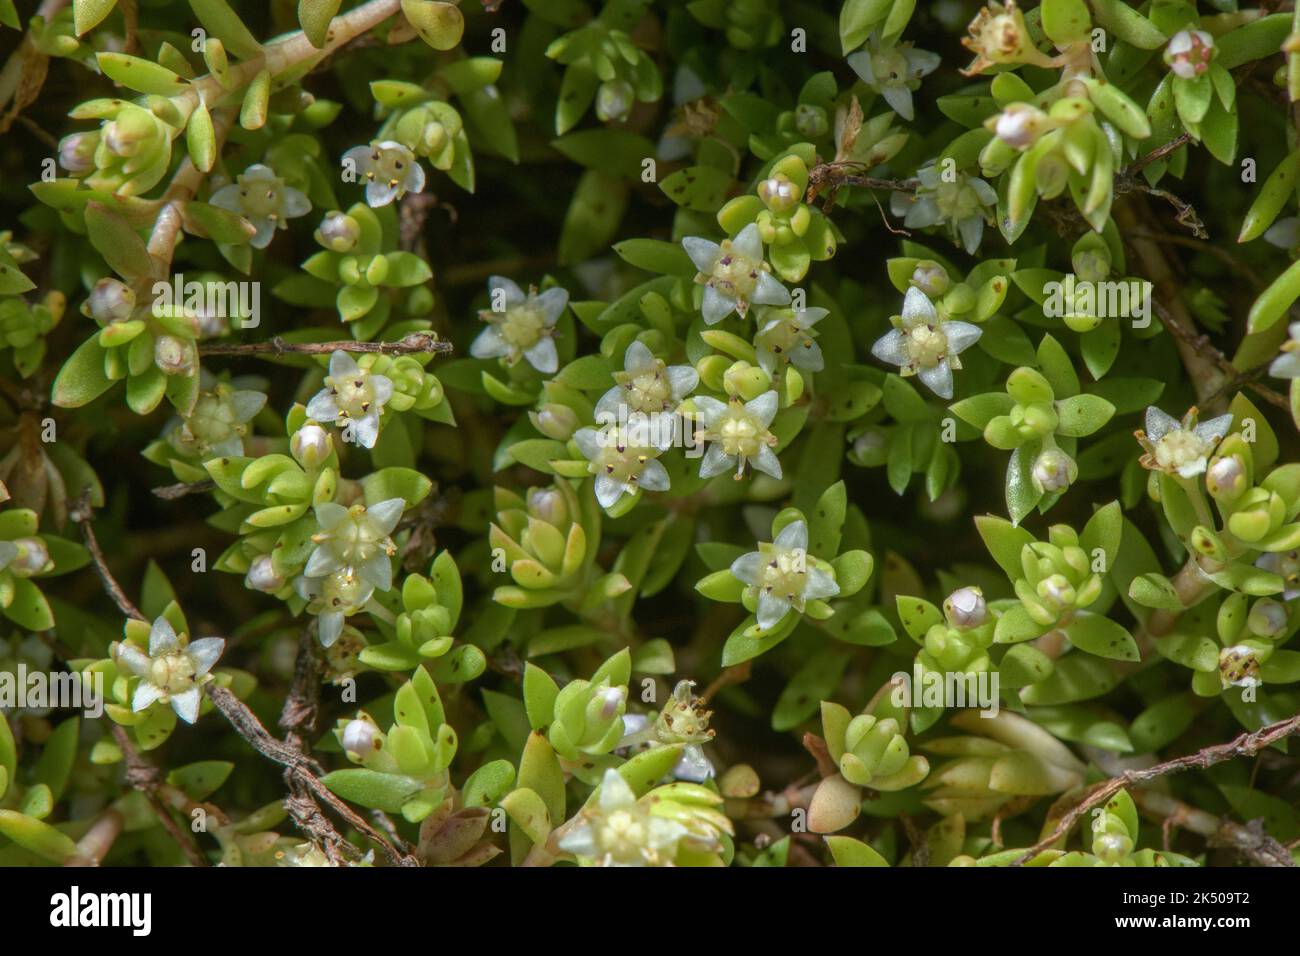 New Zealand pigmyweed, Crassula helmsii, in flower on pond margin, Somerset. Invasive wetland species. Stock Photo